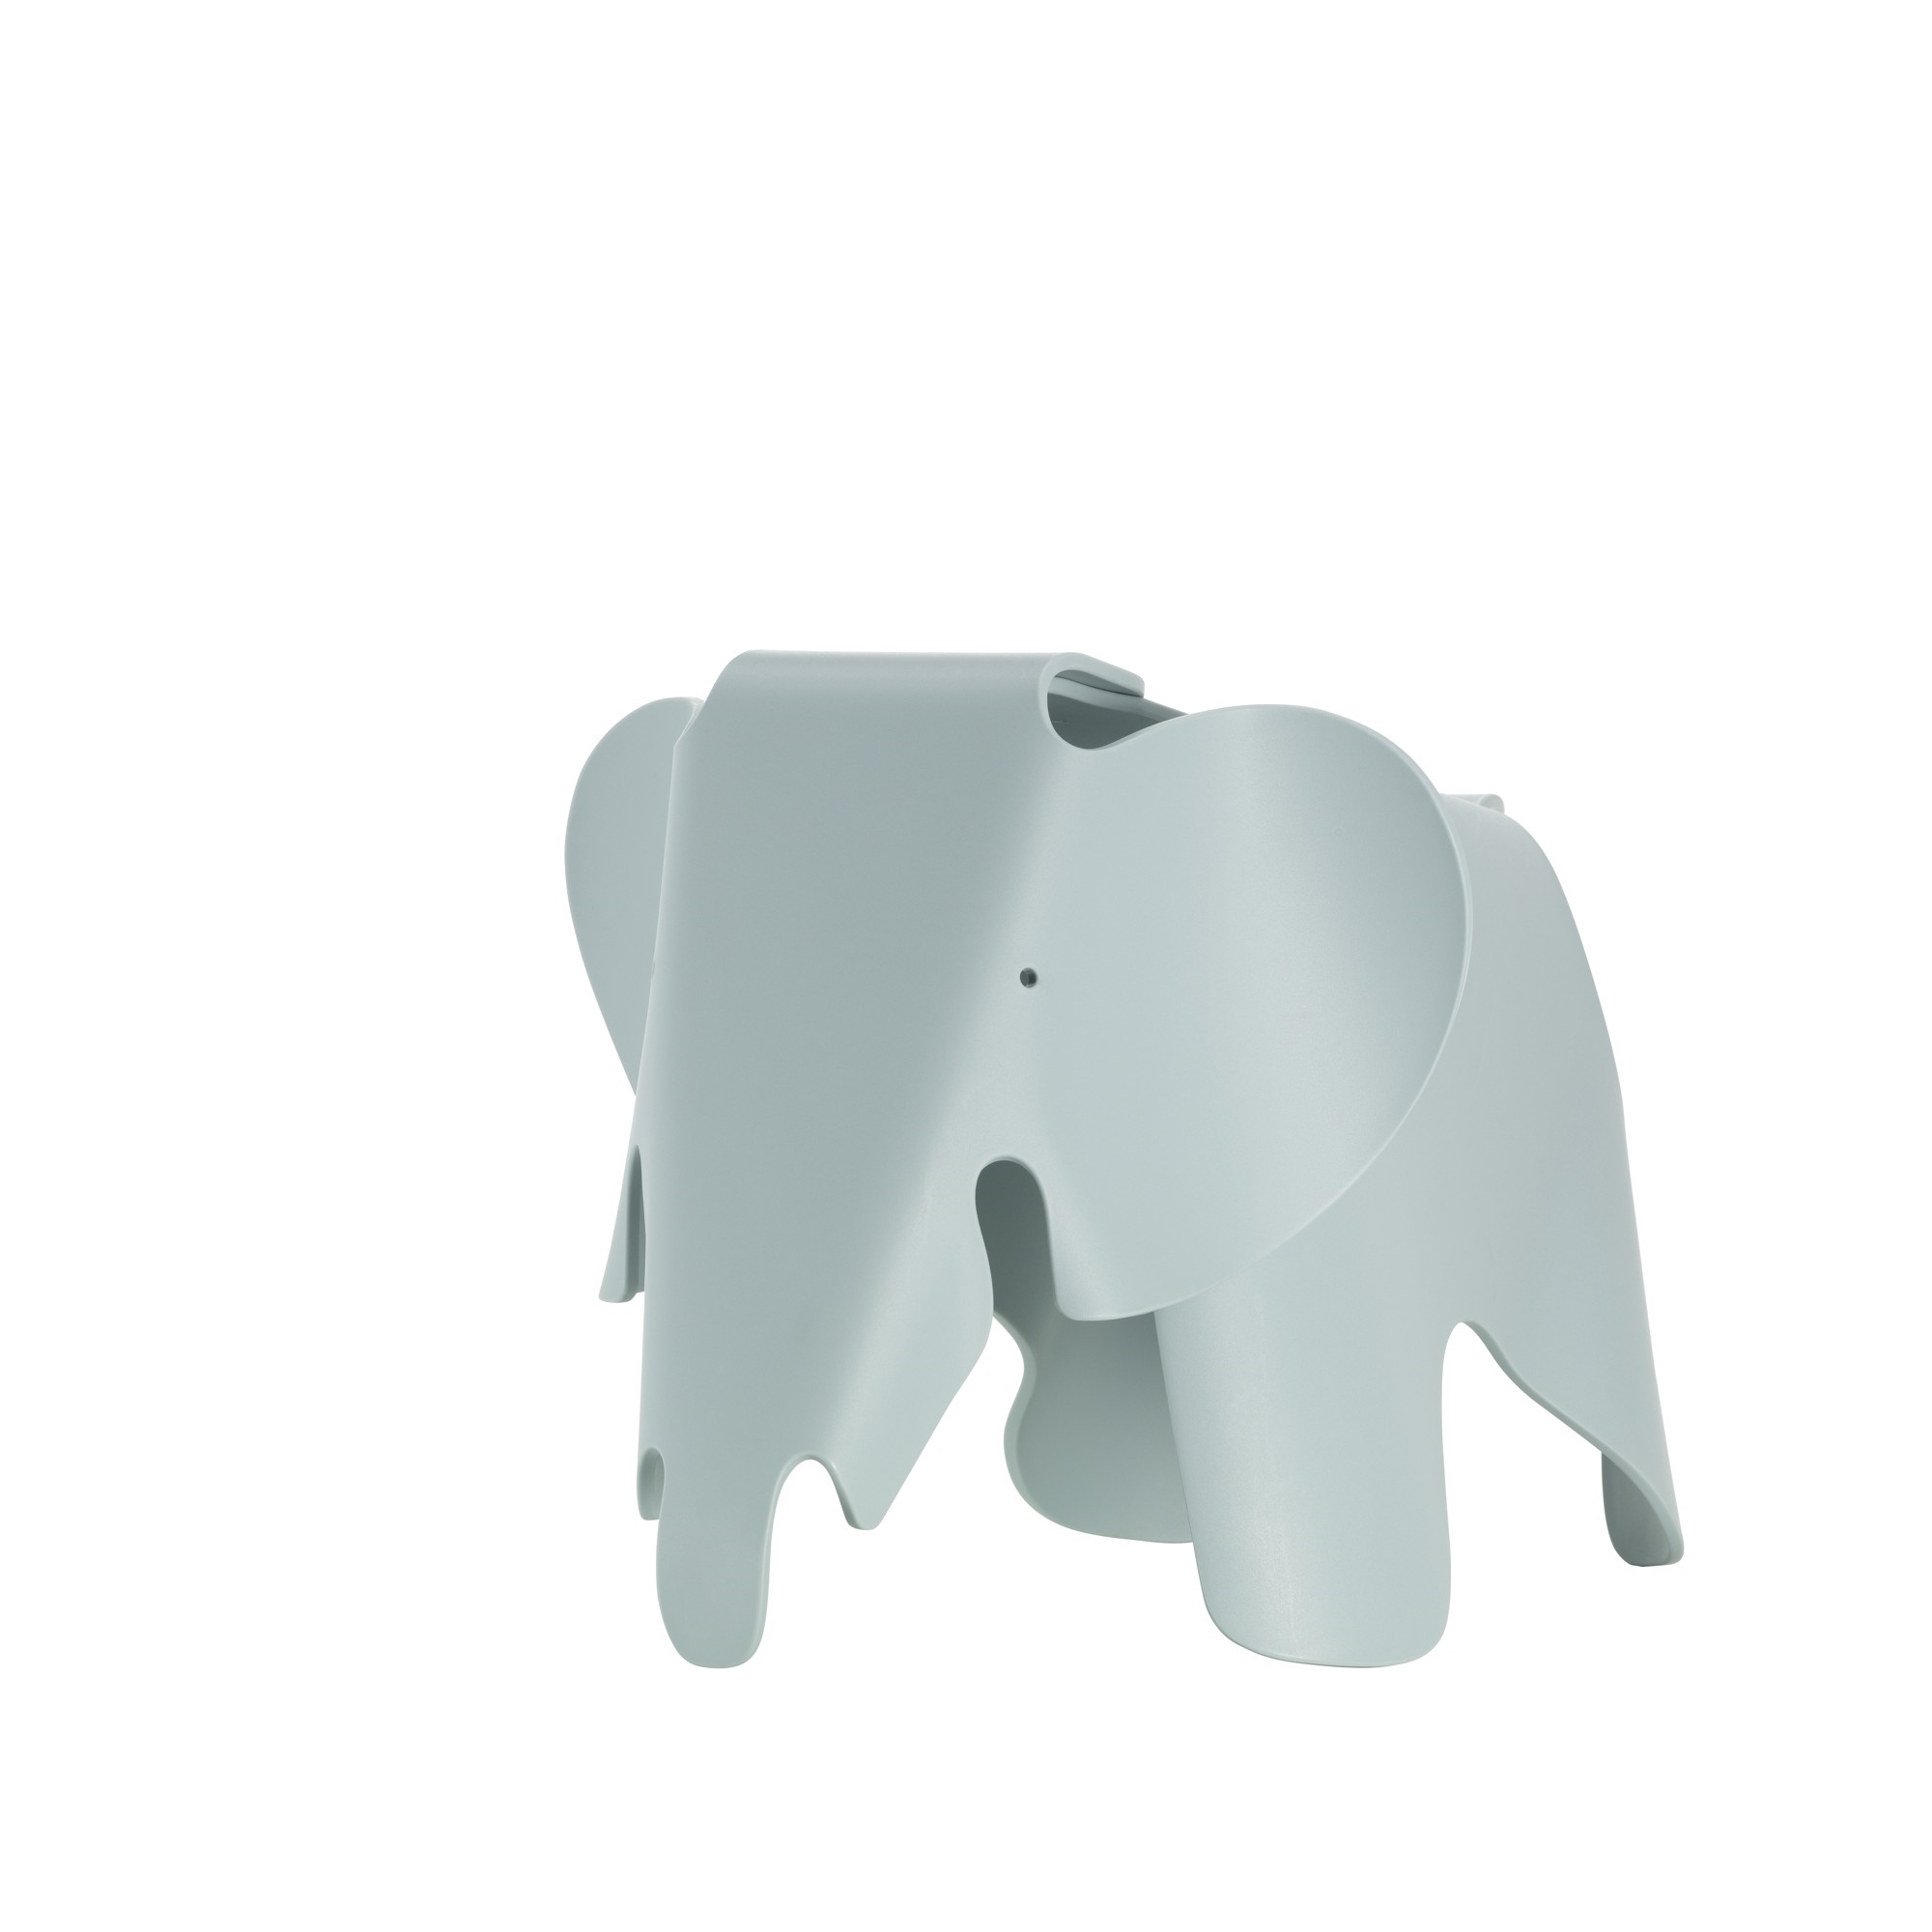 Wennen aan kubus Verenigde Staten van Amerika Eames Elephant Stool Groot Ice Grijs van Vitra - Gratis verzending!